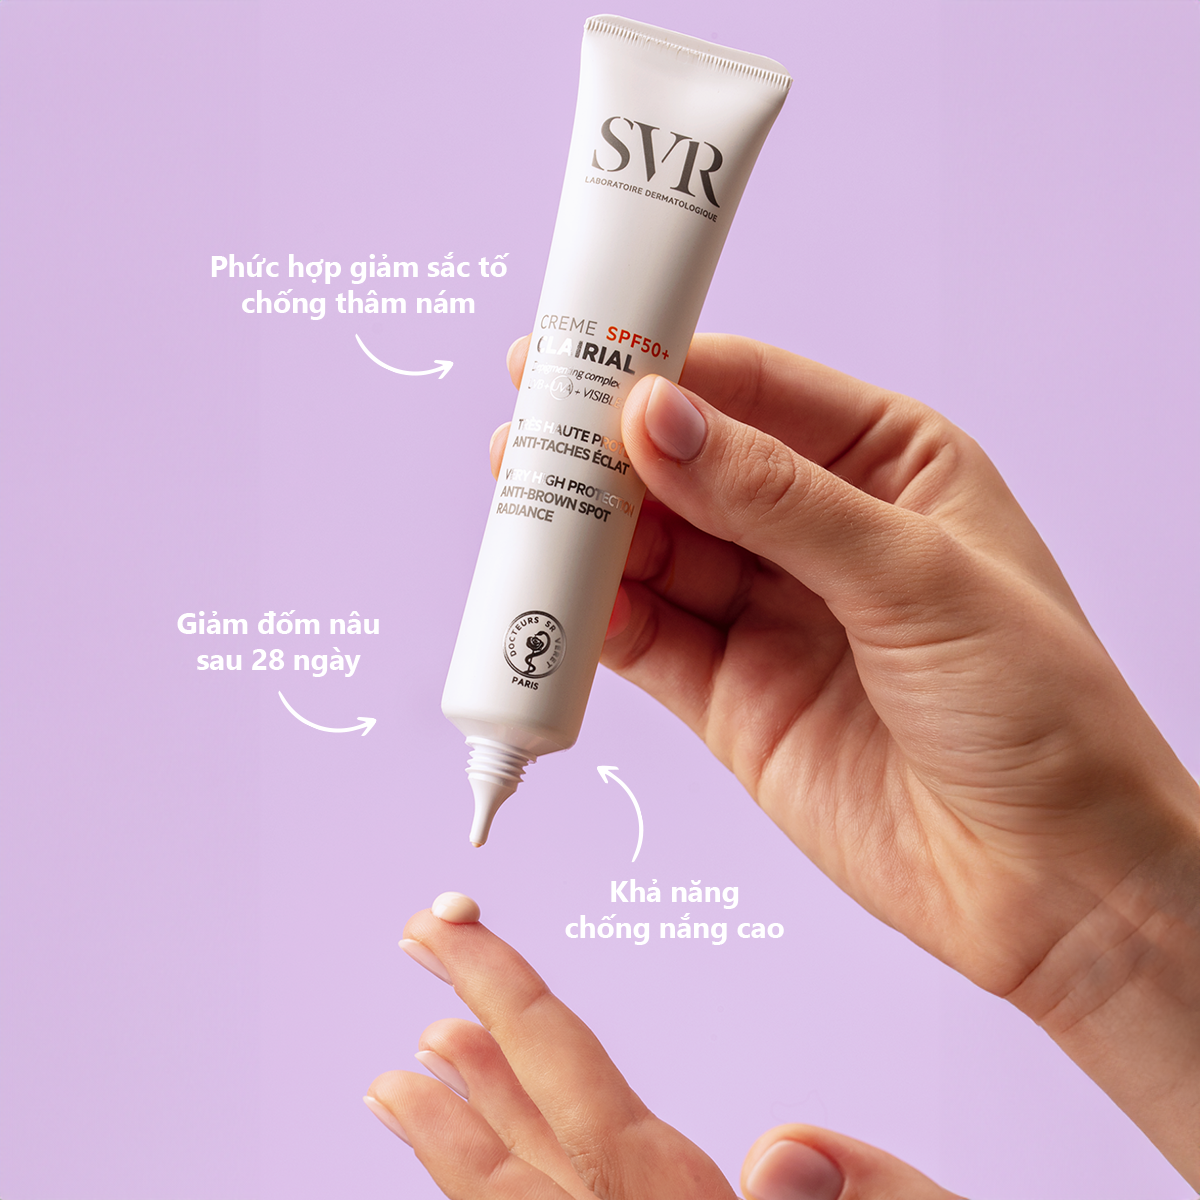 SVR CLAIRIAL Crème SPF 50+ cung cấp 1 chế độ chăm sóc 2 trong 1: vừa chống nắng cao vừa giúp ngăn ngừa, làm mờ các đốm sắc tố